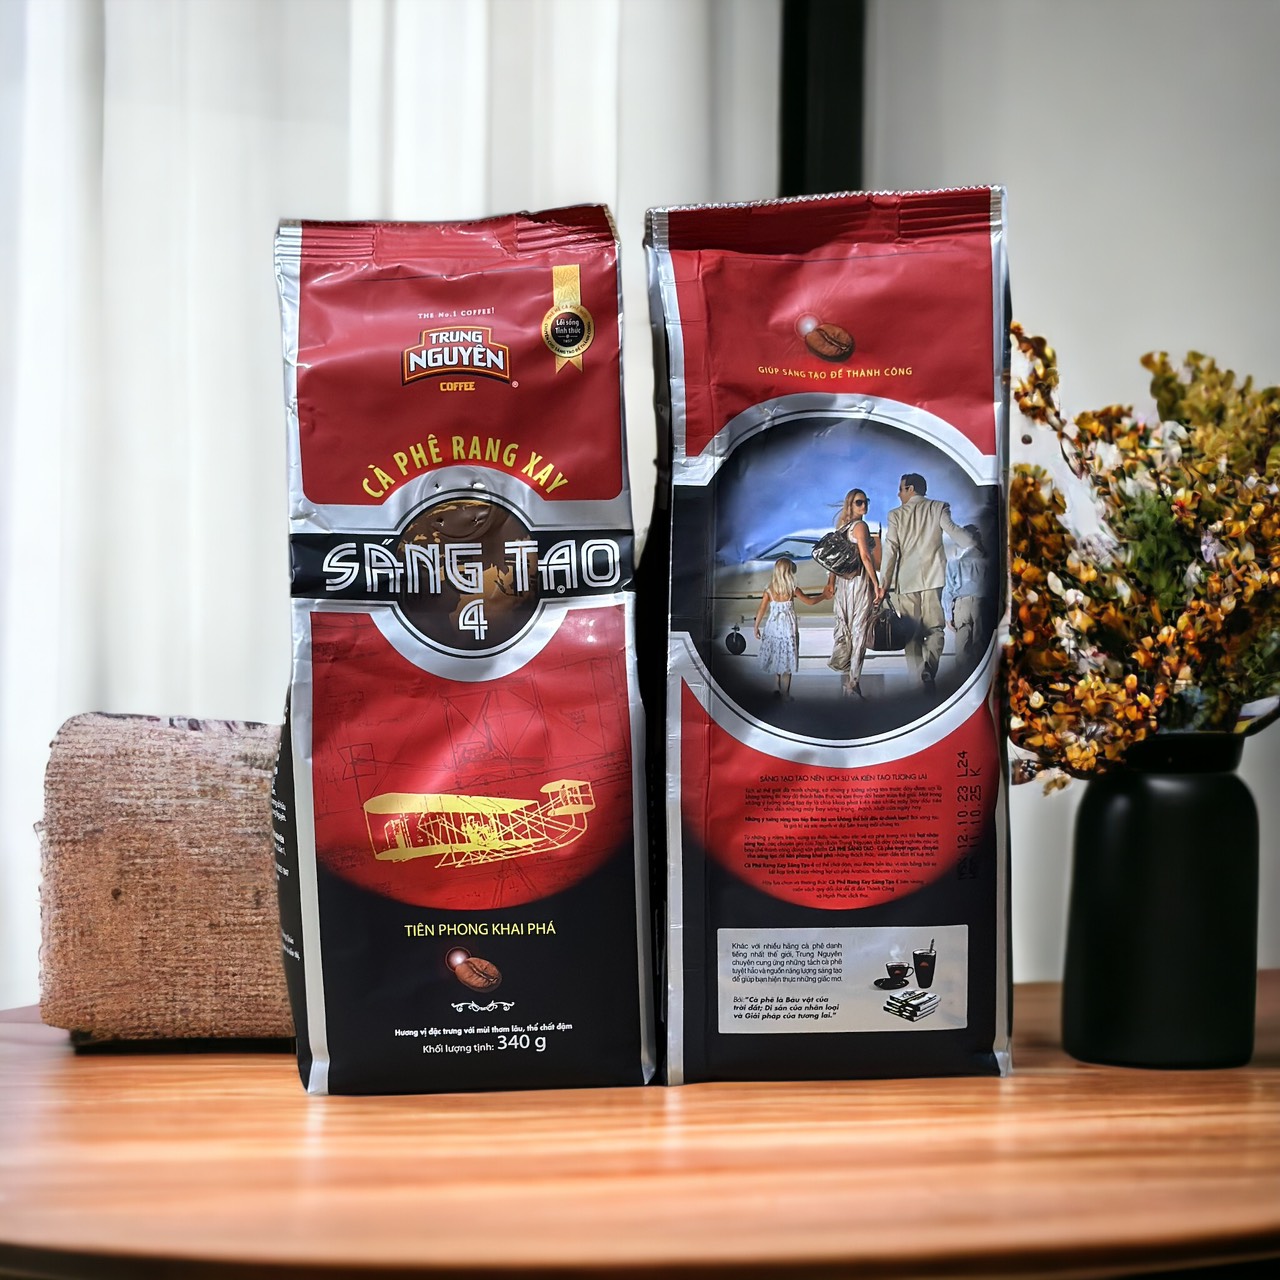 Cà phê rang xay Sáng tạo 4 Trung Nguyên( 340gam)